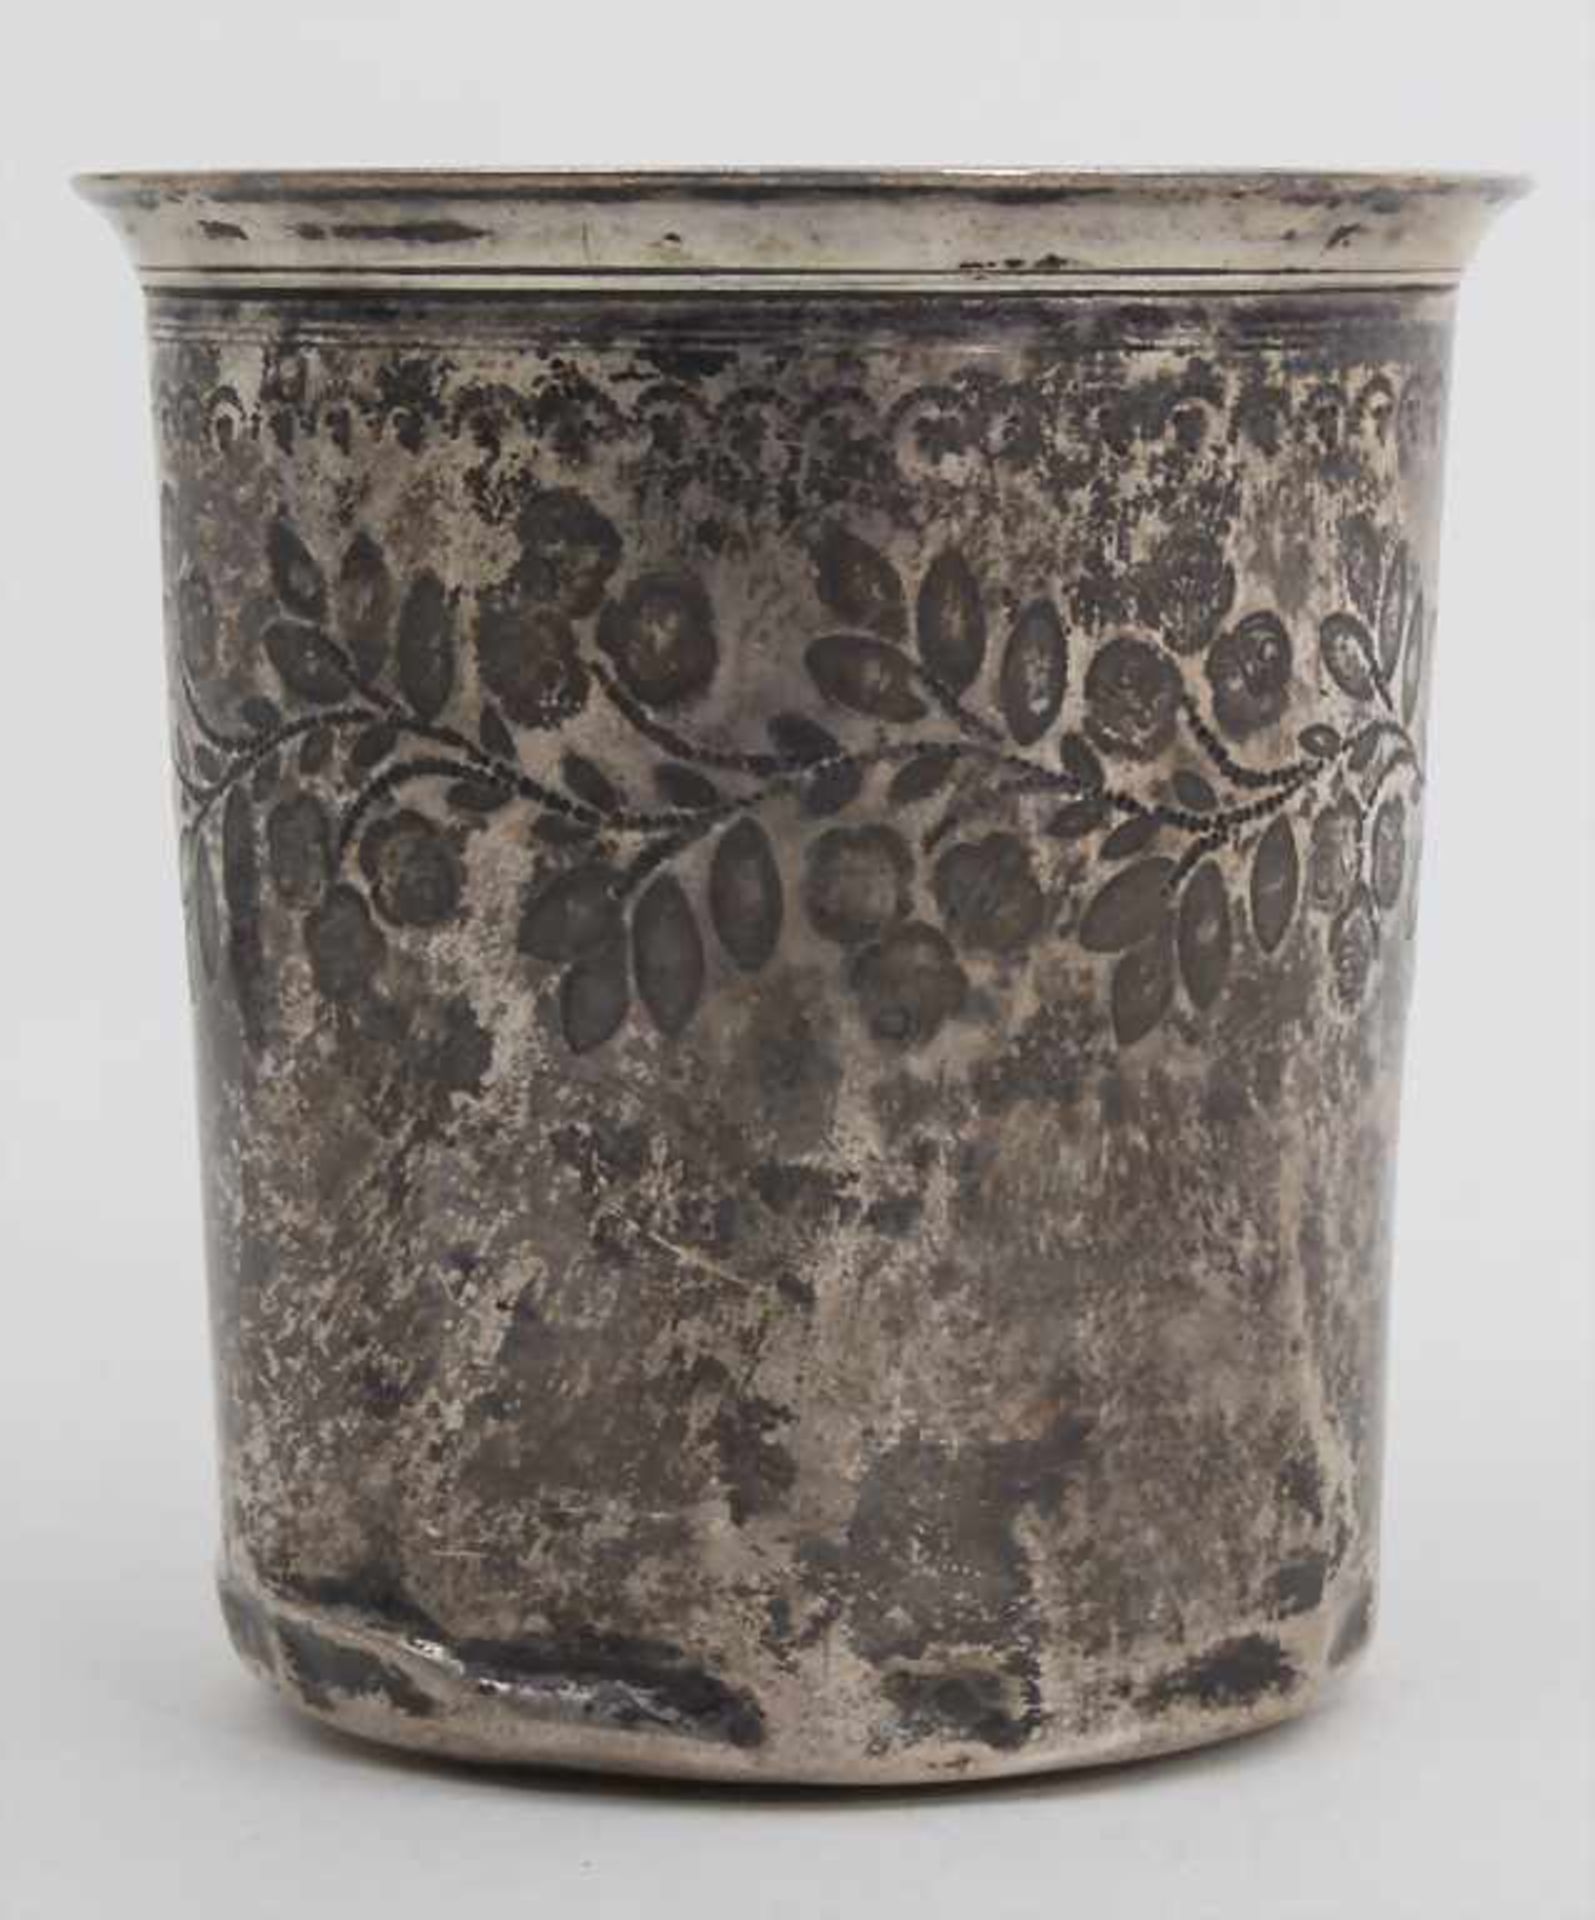 Becher / A silver beaker, César Tonnelier, Paris, um 1860Material: Silber Ag 950/000, Punzierung: